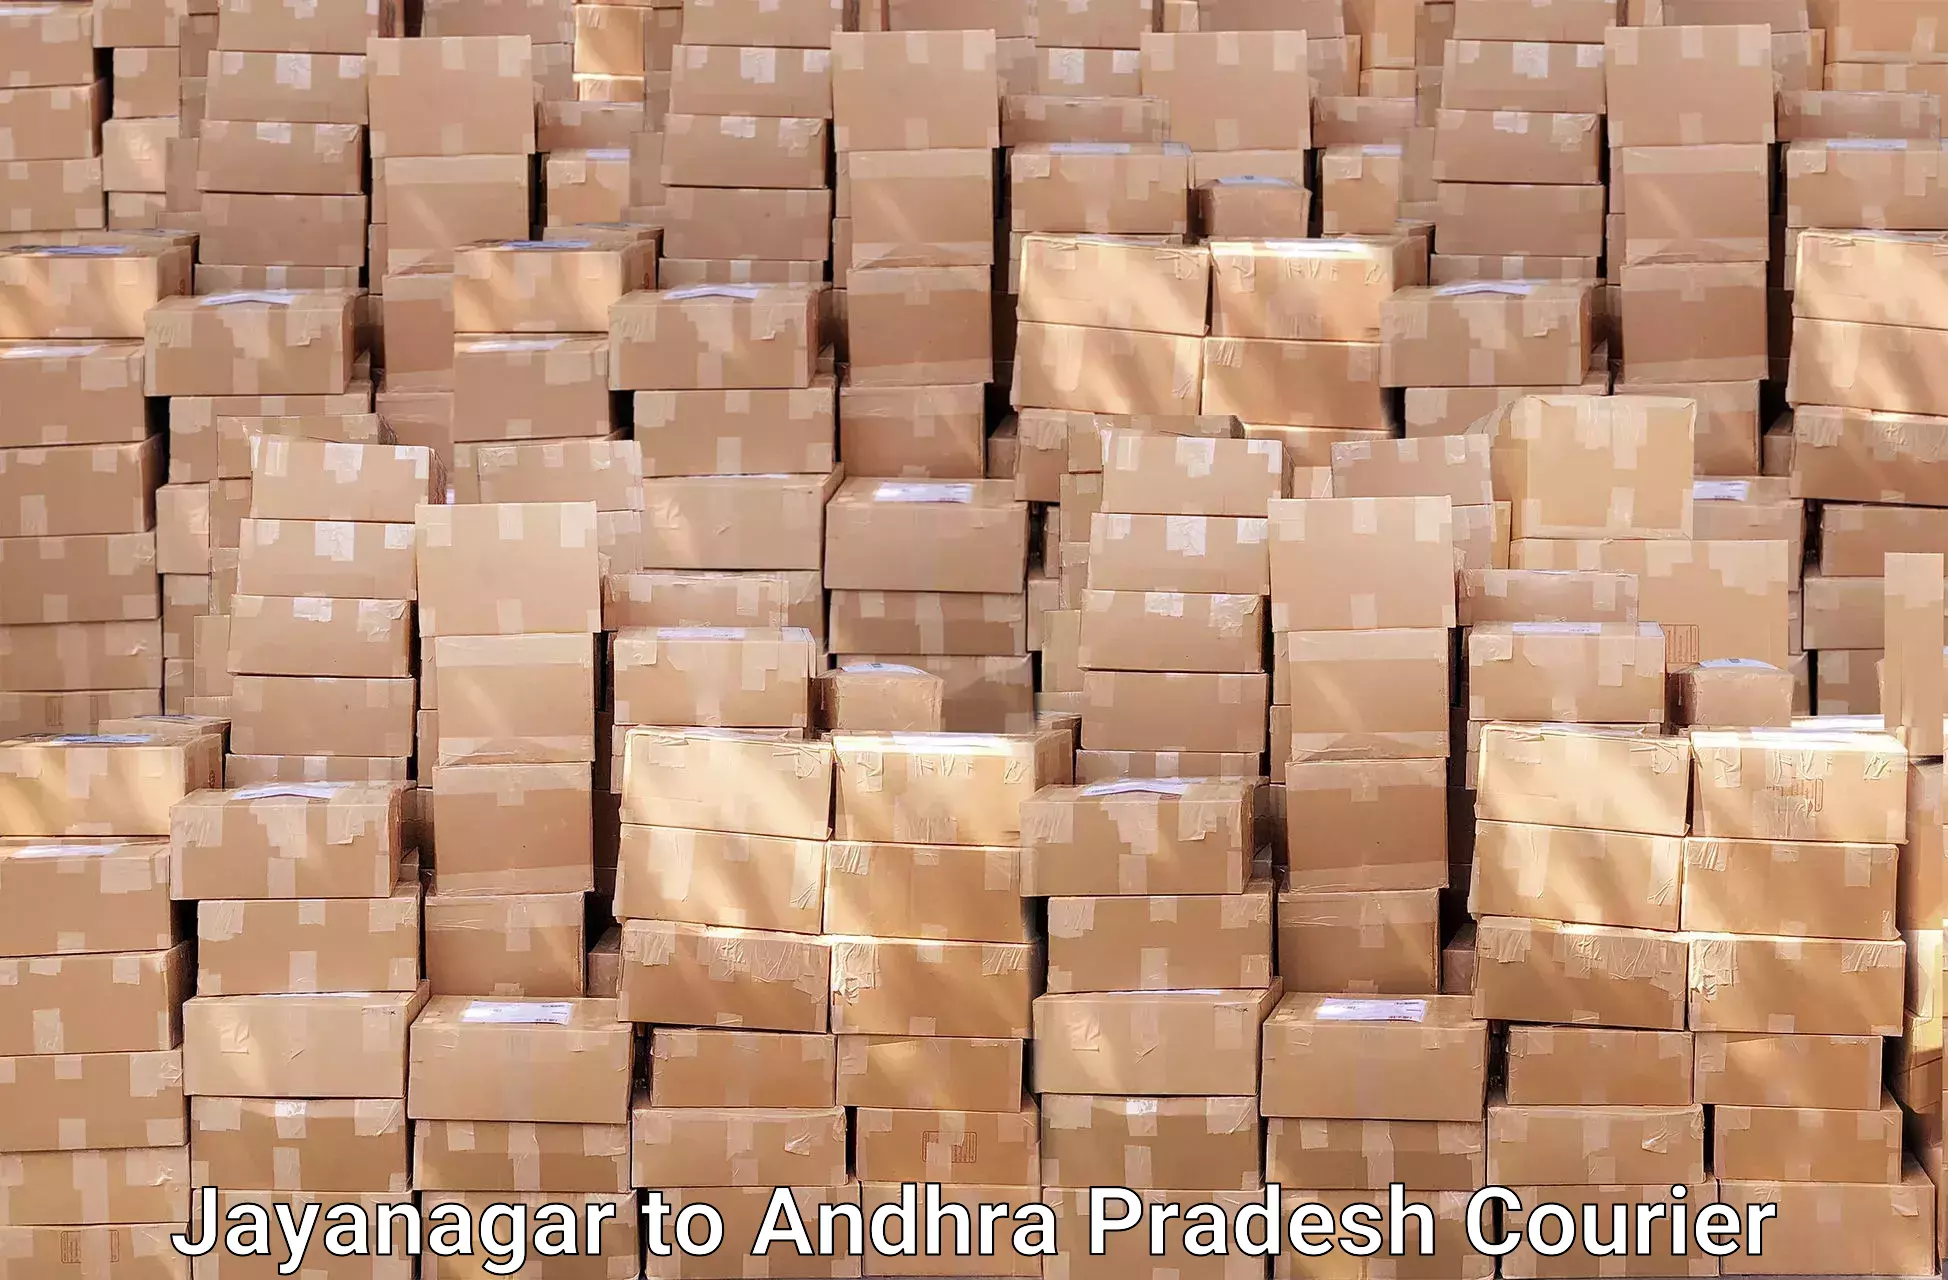 Efficient packing services in Jayanagar to Gorantla